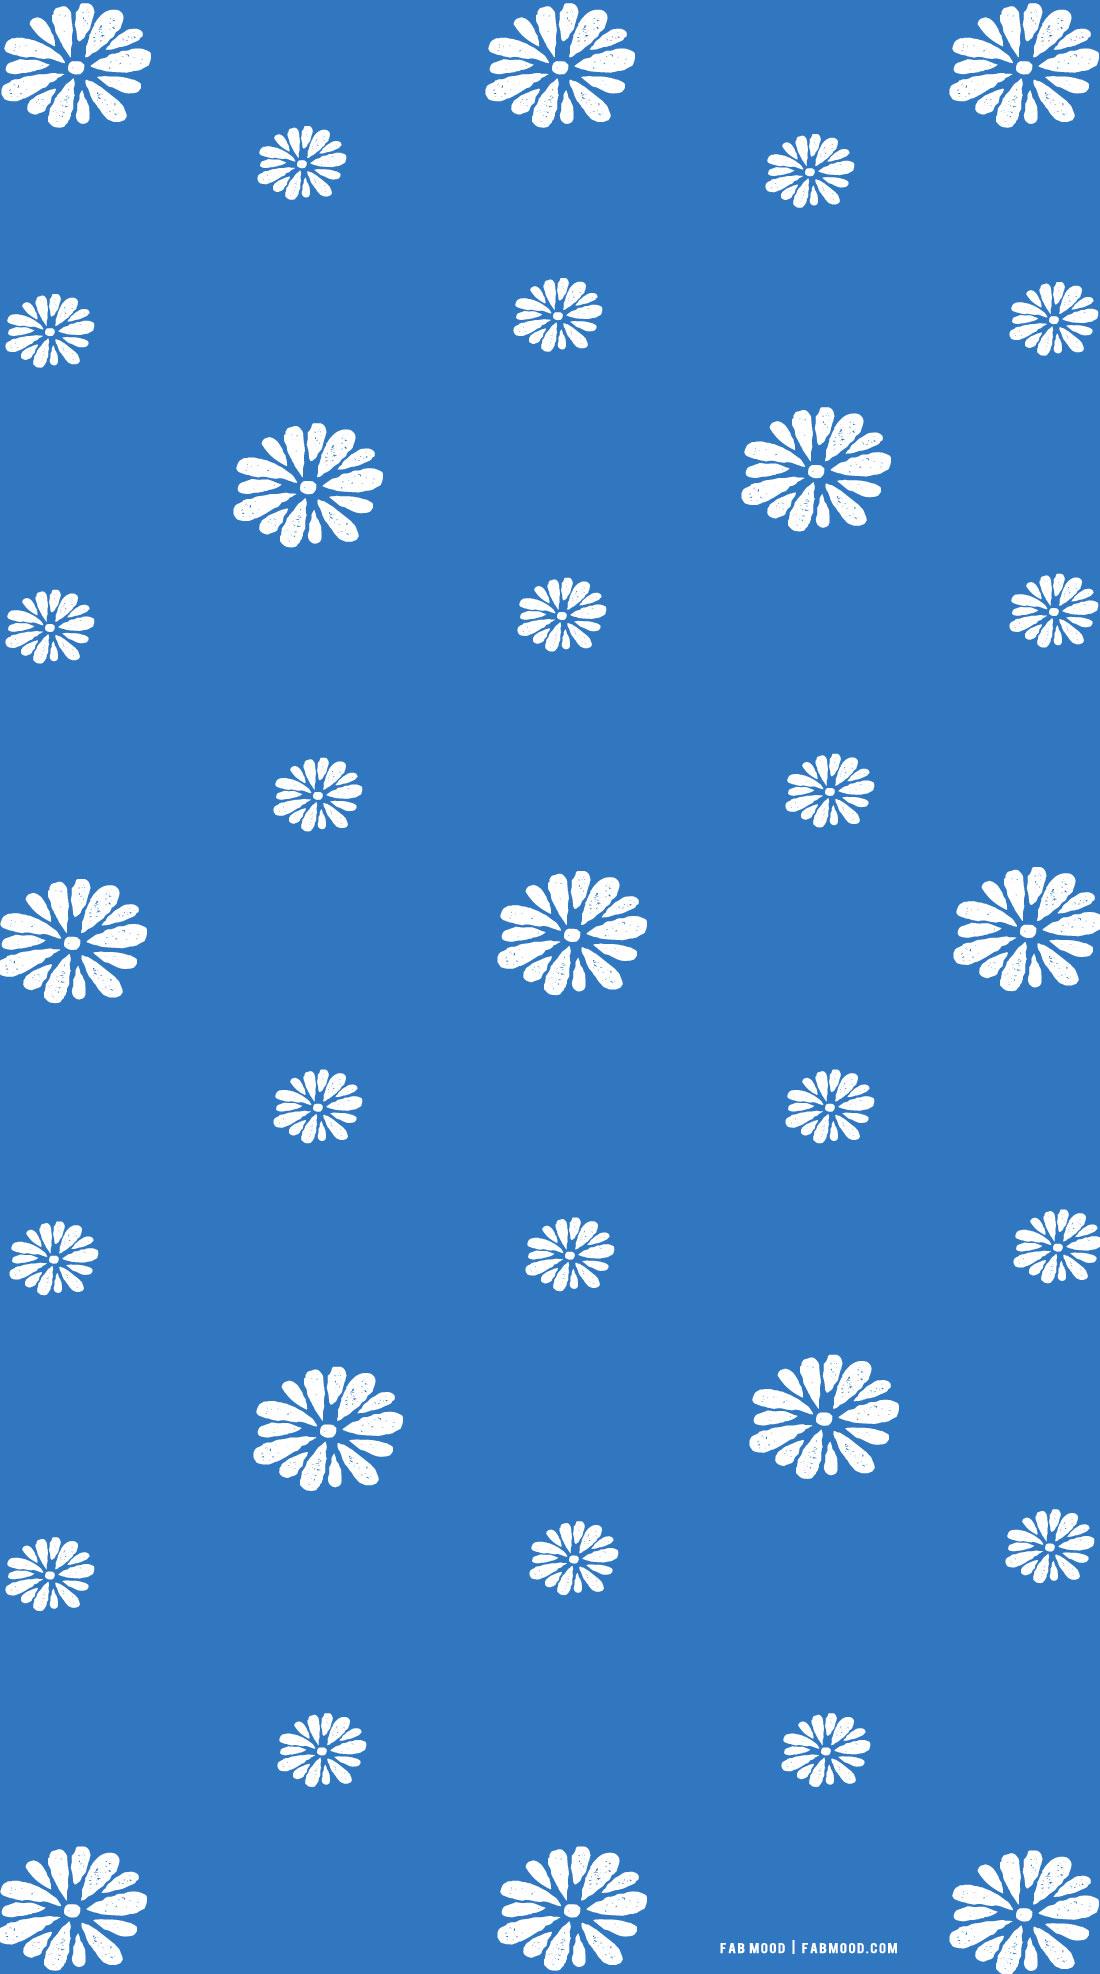 Azure Blue Wallpaper For Phone Daisy Illustration